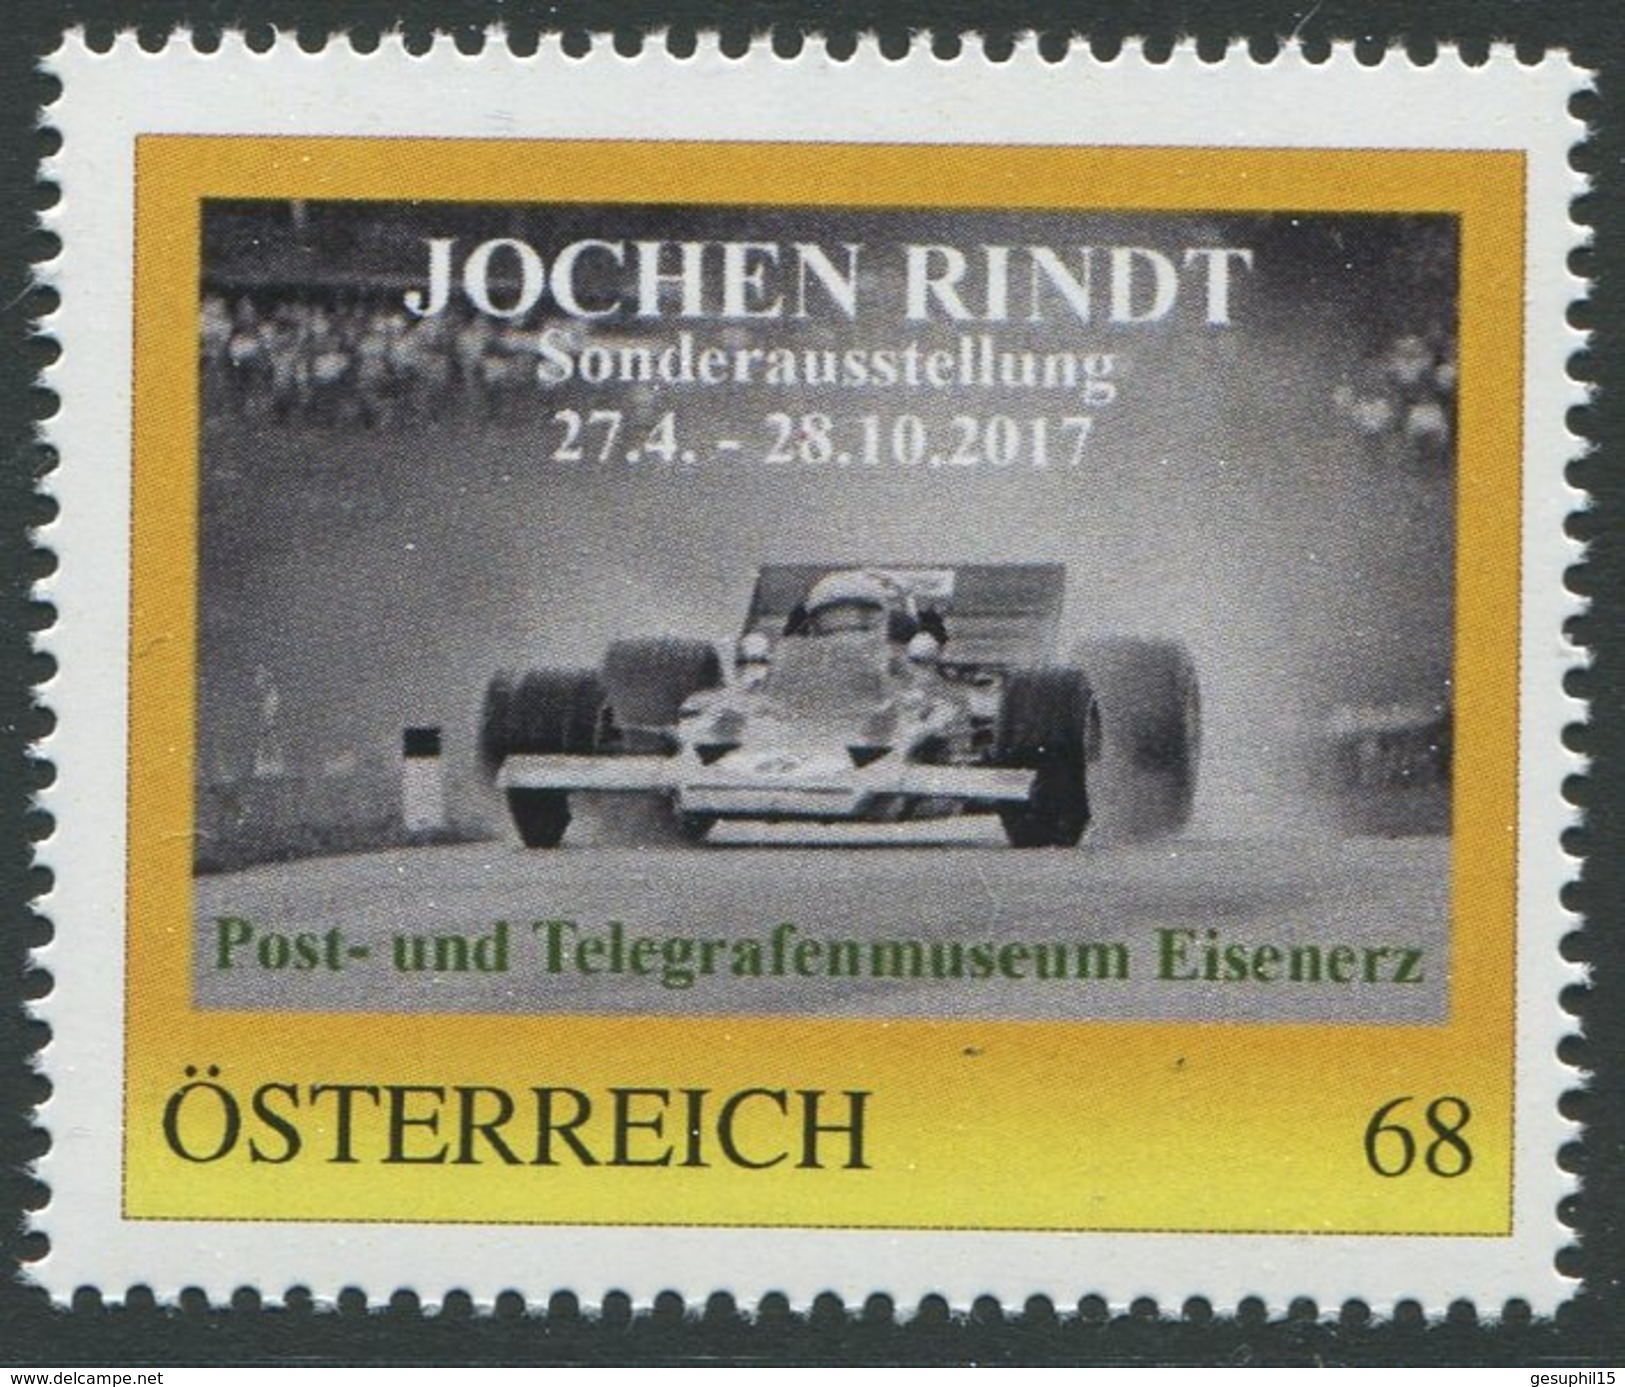 ÖSTERREICH / PM Nr. 8122698 / Jochen Rindt / Postfrisch / ** / MNH - Personalisierte Briefmarken